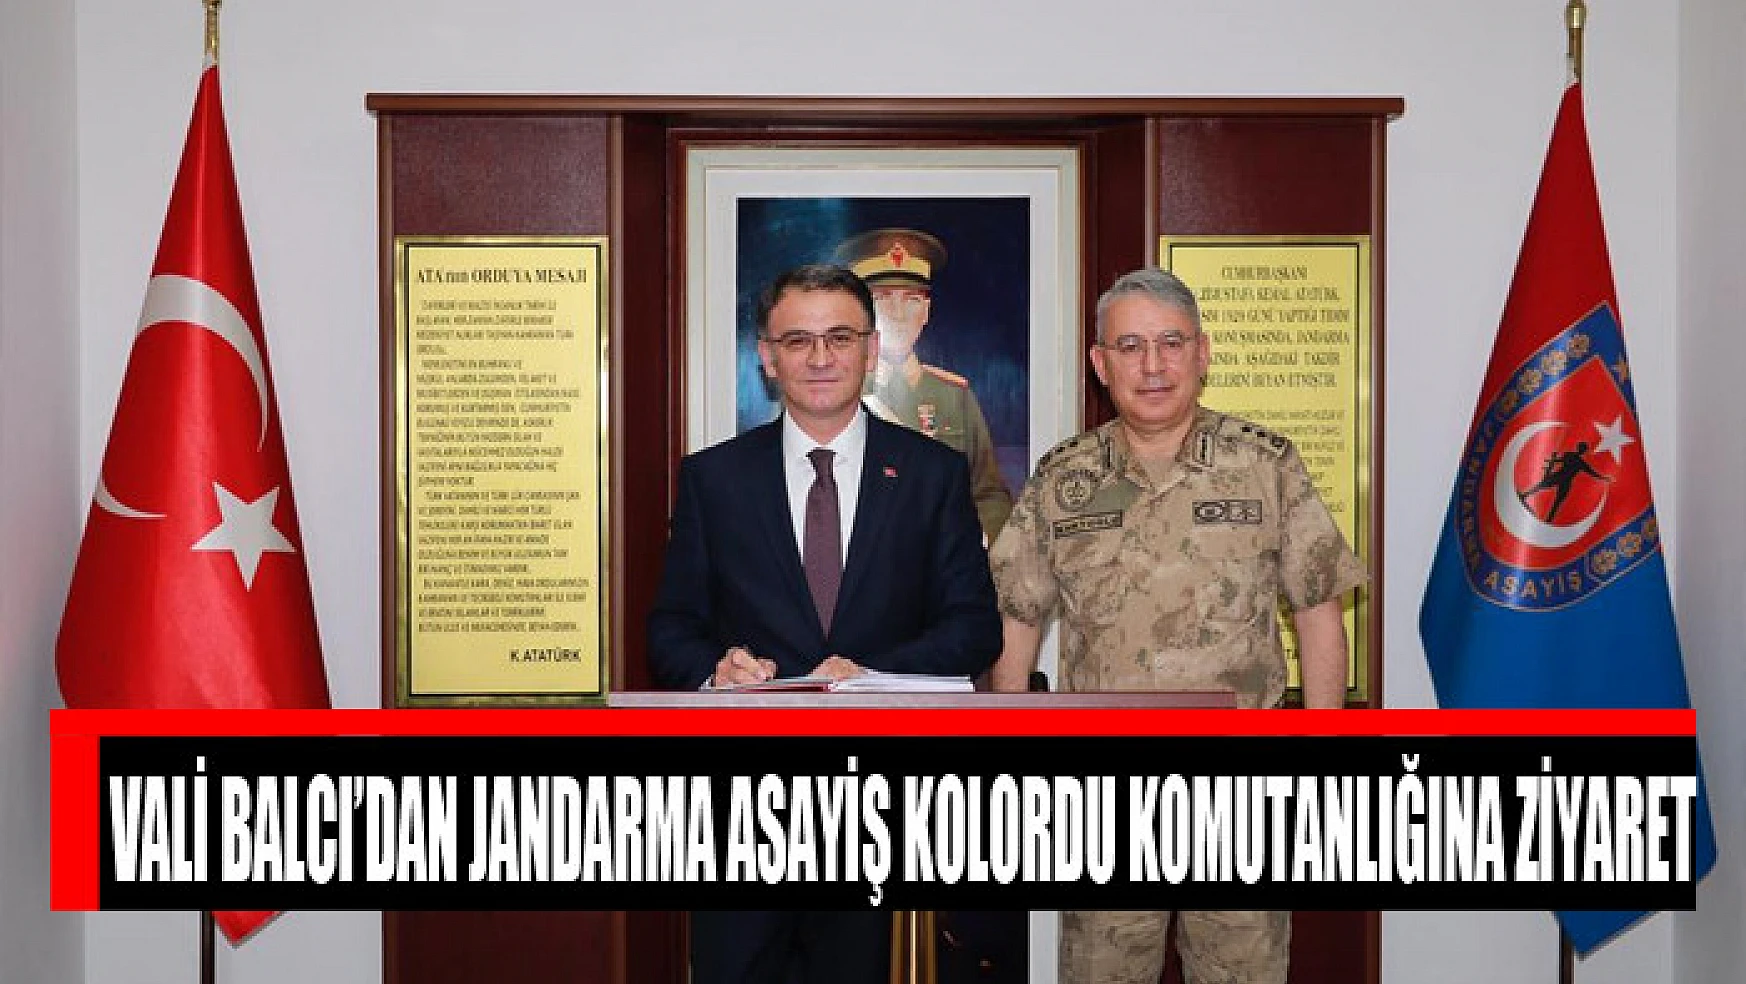 Vali Balcı'dan Jandarma Asayiş Kolordu Komutanlığına ziyaret